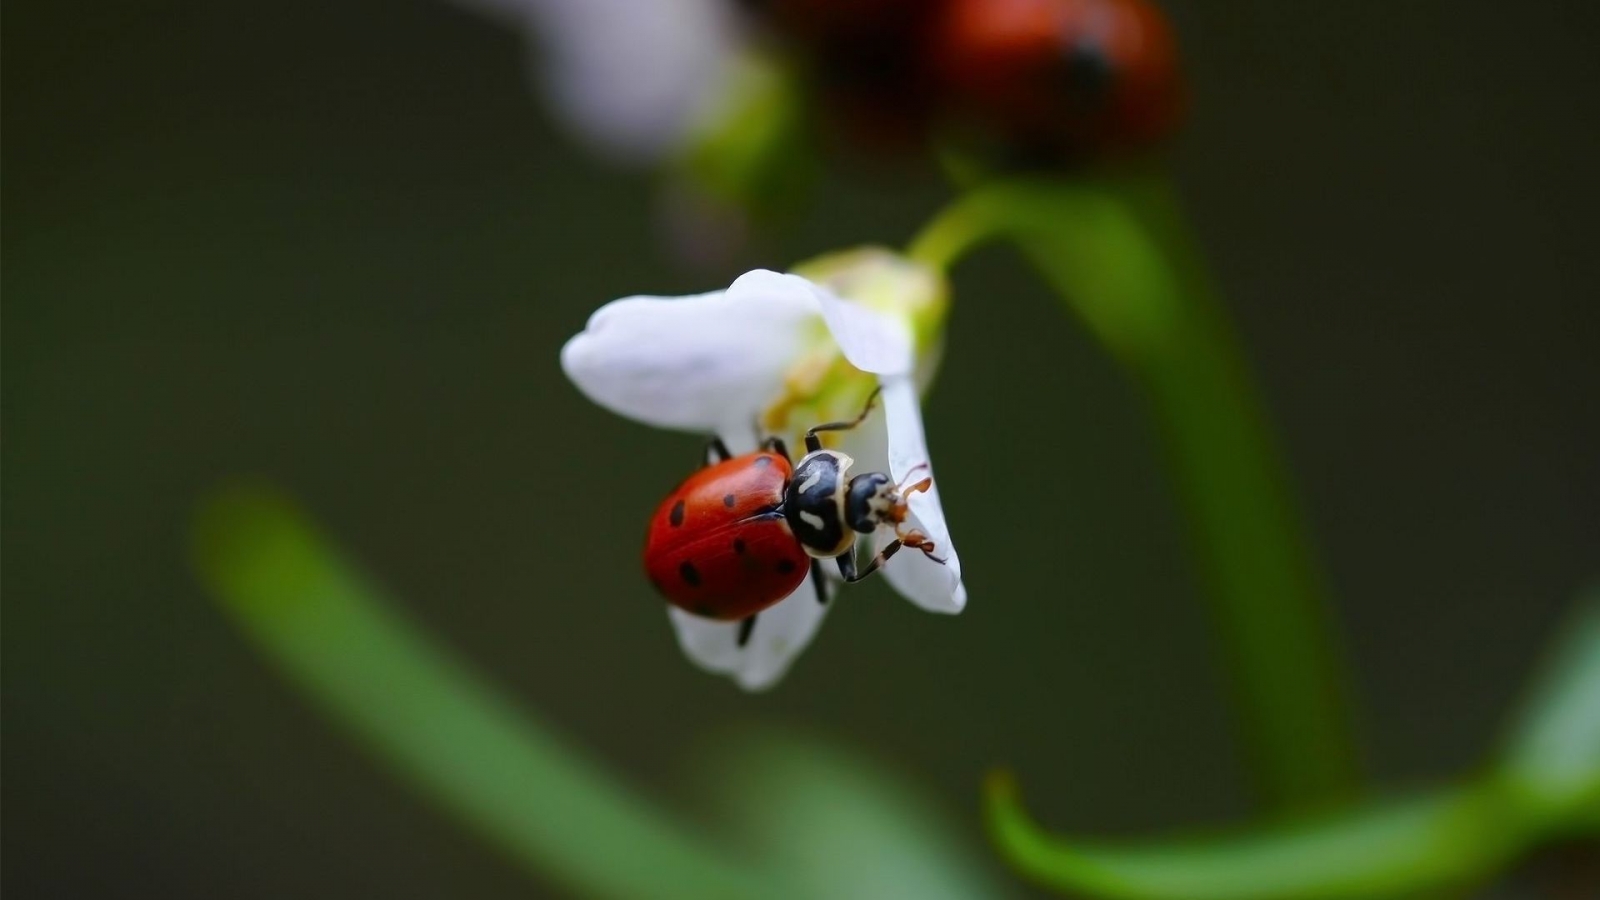 Ladybug on White Flower for 1600 x 900 HDTV resolution